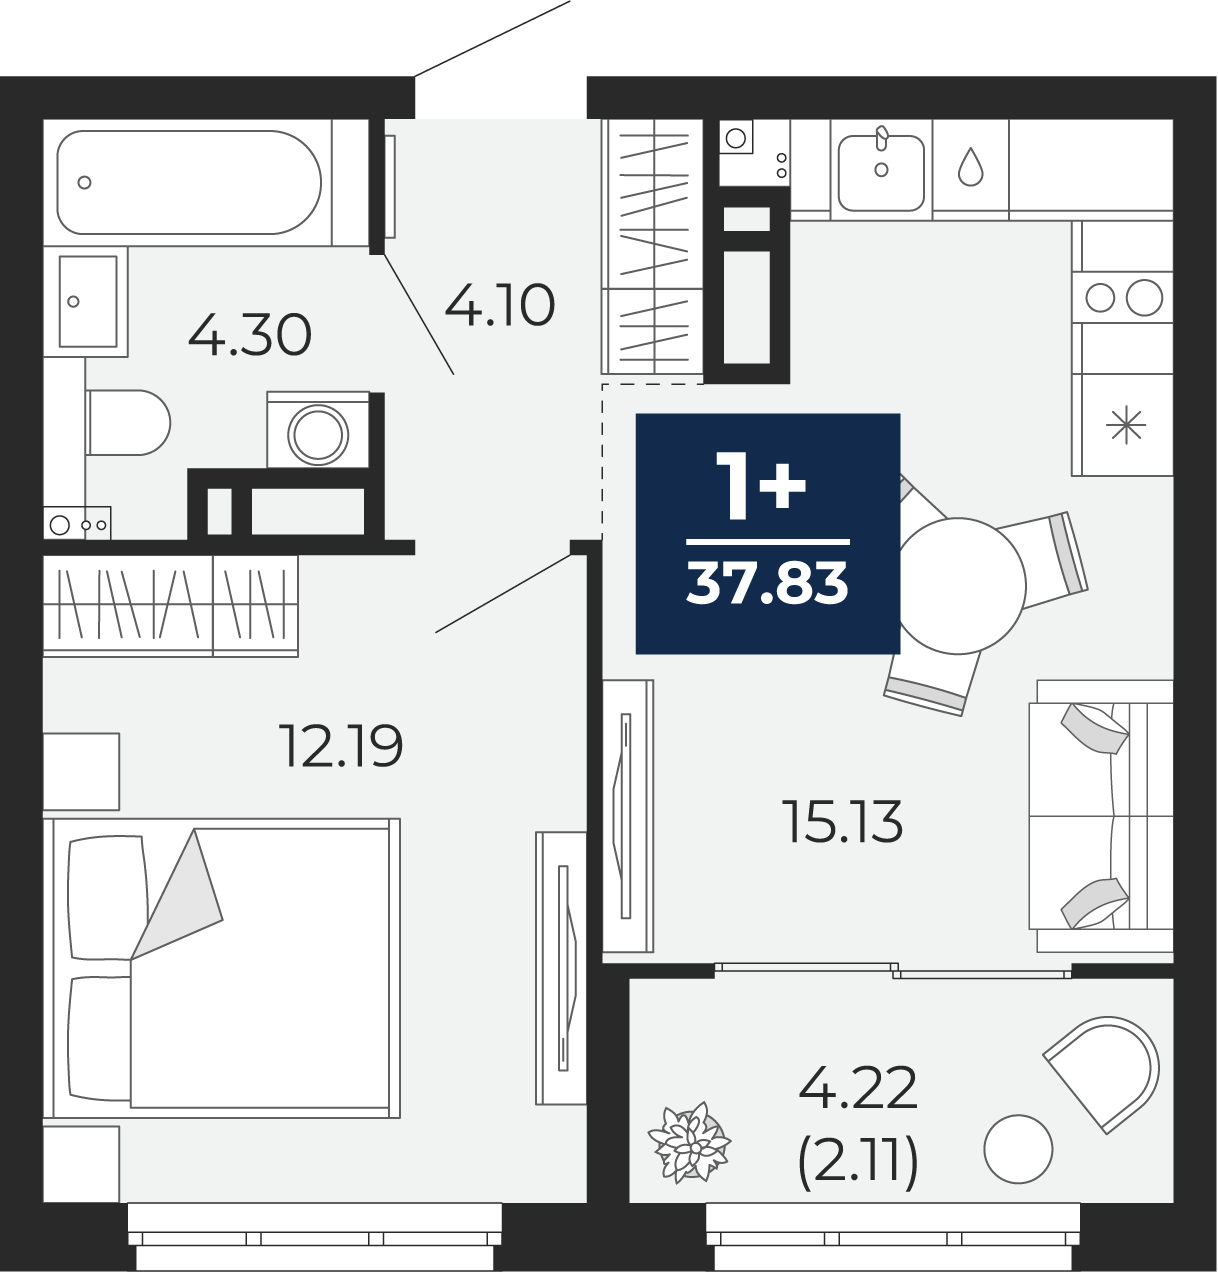 Квартира № 241, 1-комнатная, 37.83 кв. м, 6 этаж